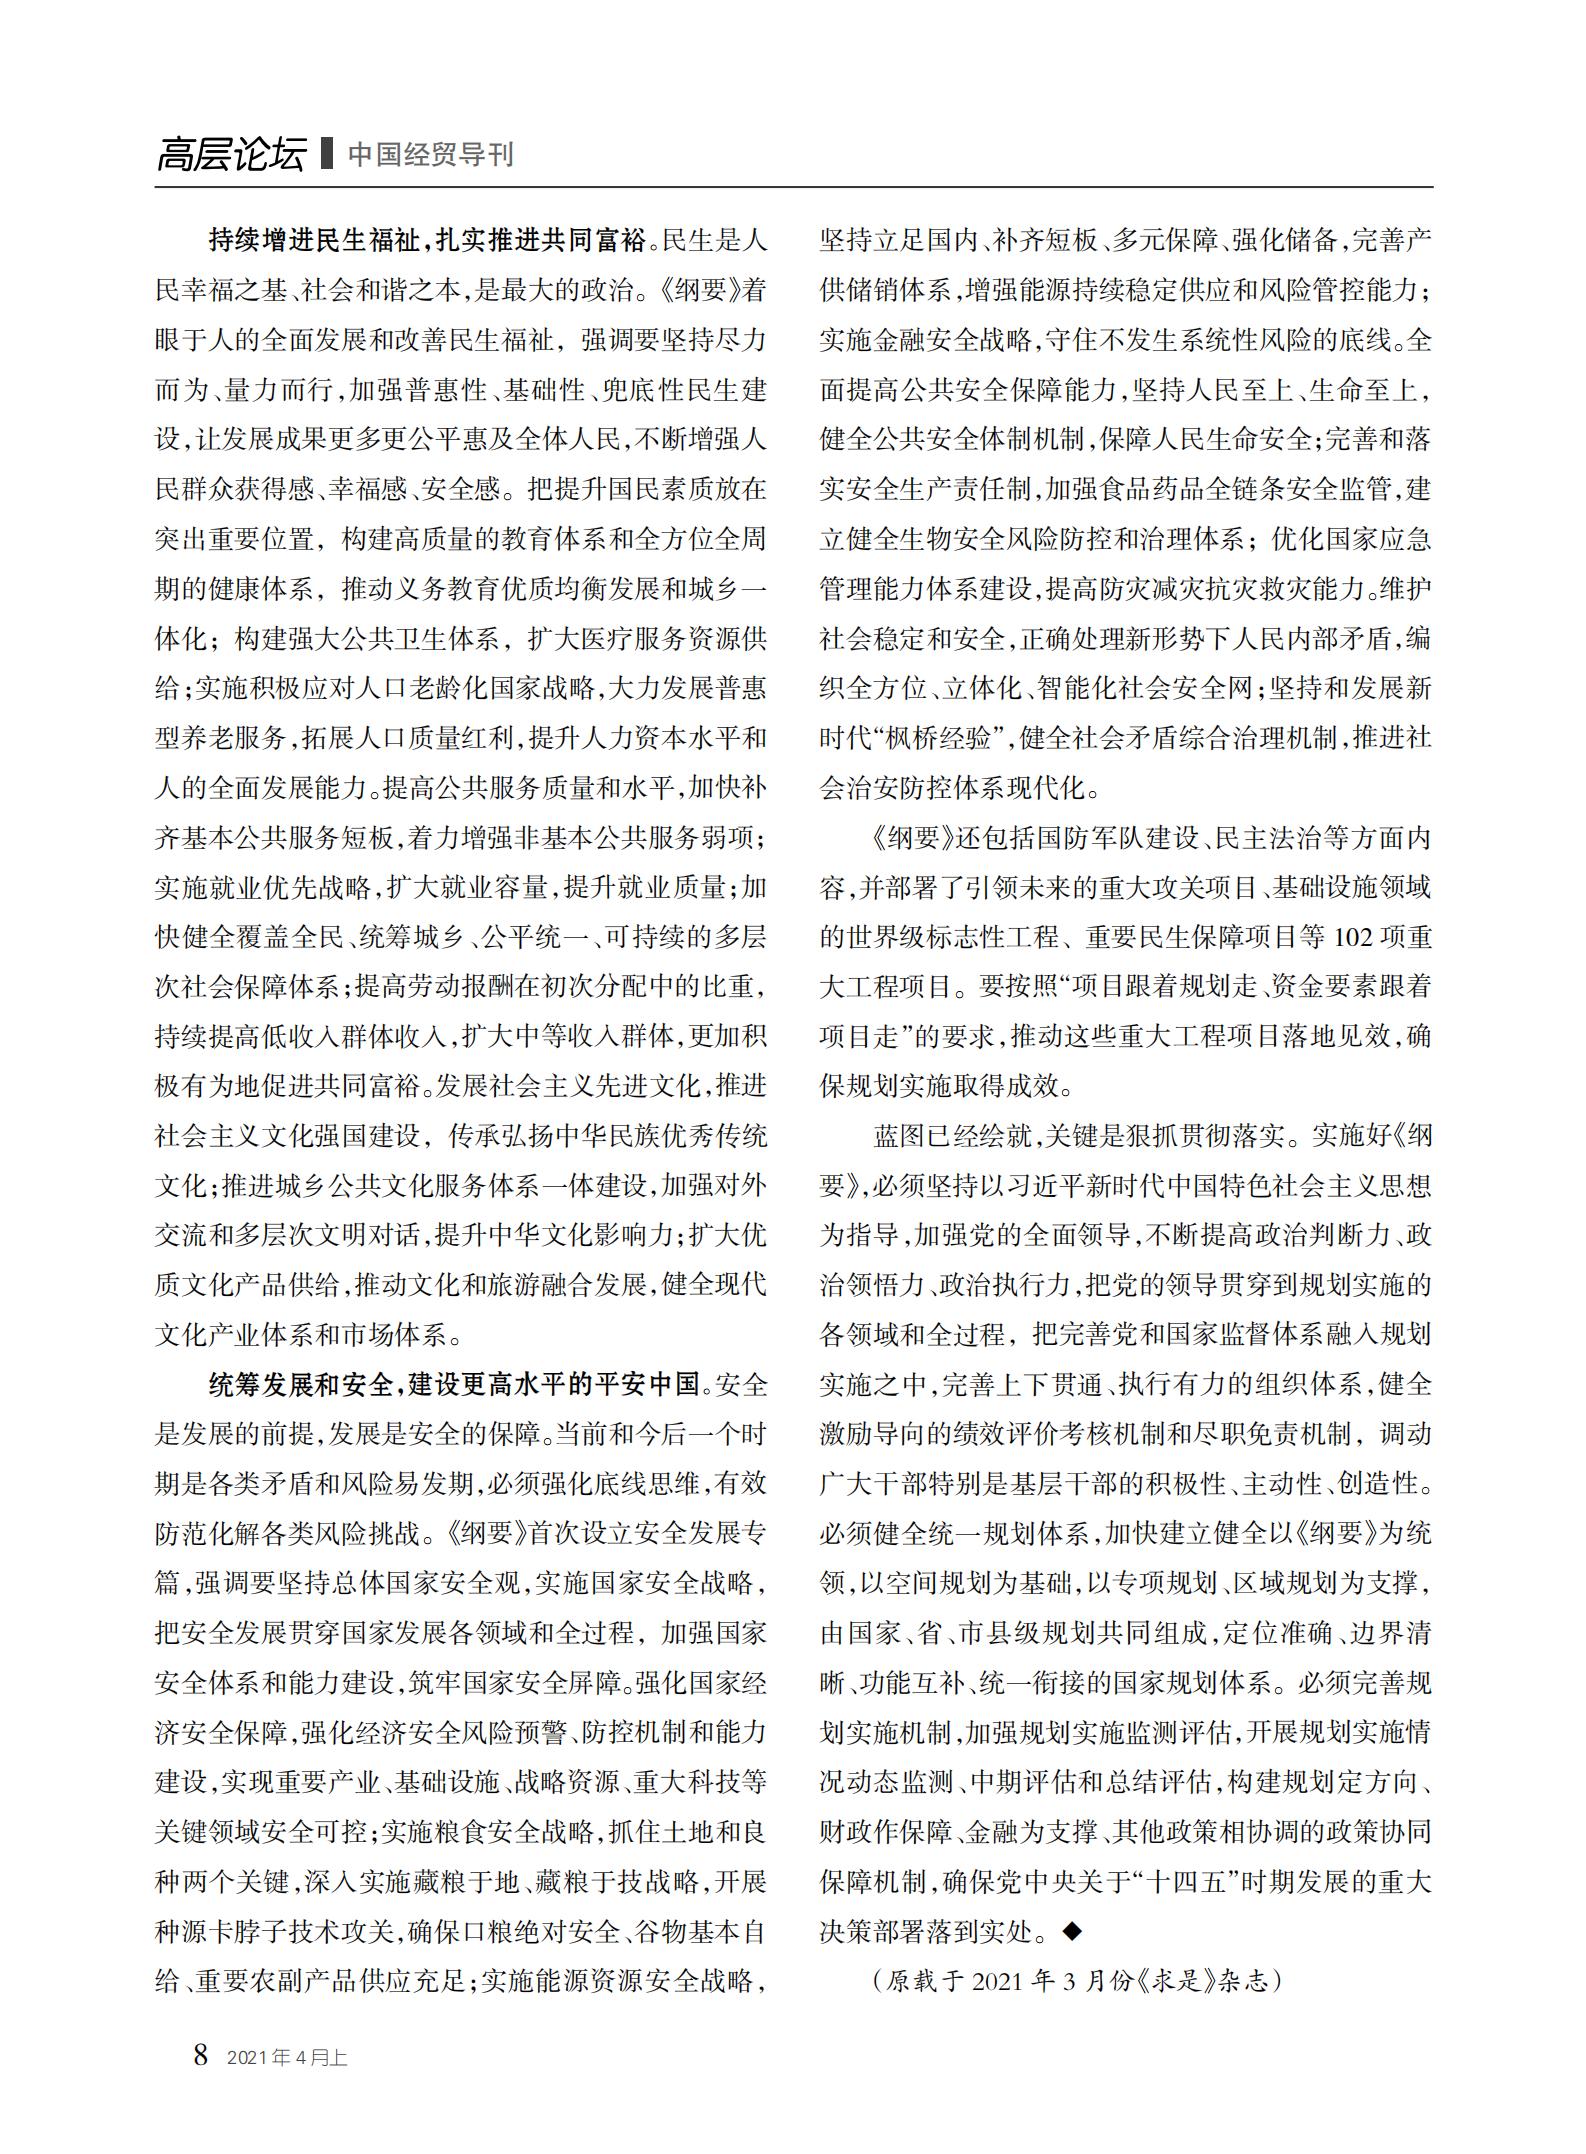 中国经贸导刊2021-4上印刷_07.jpg